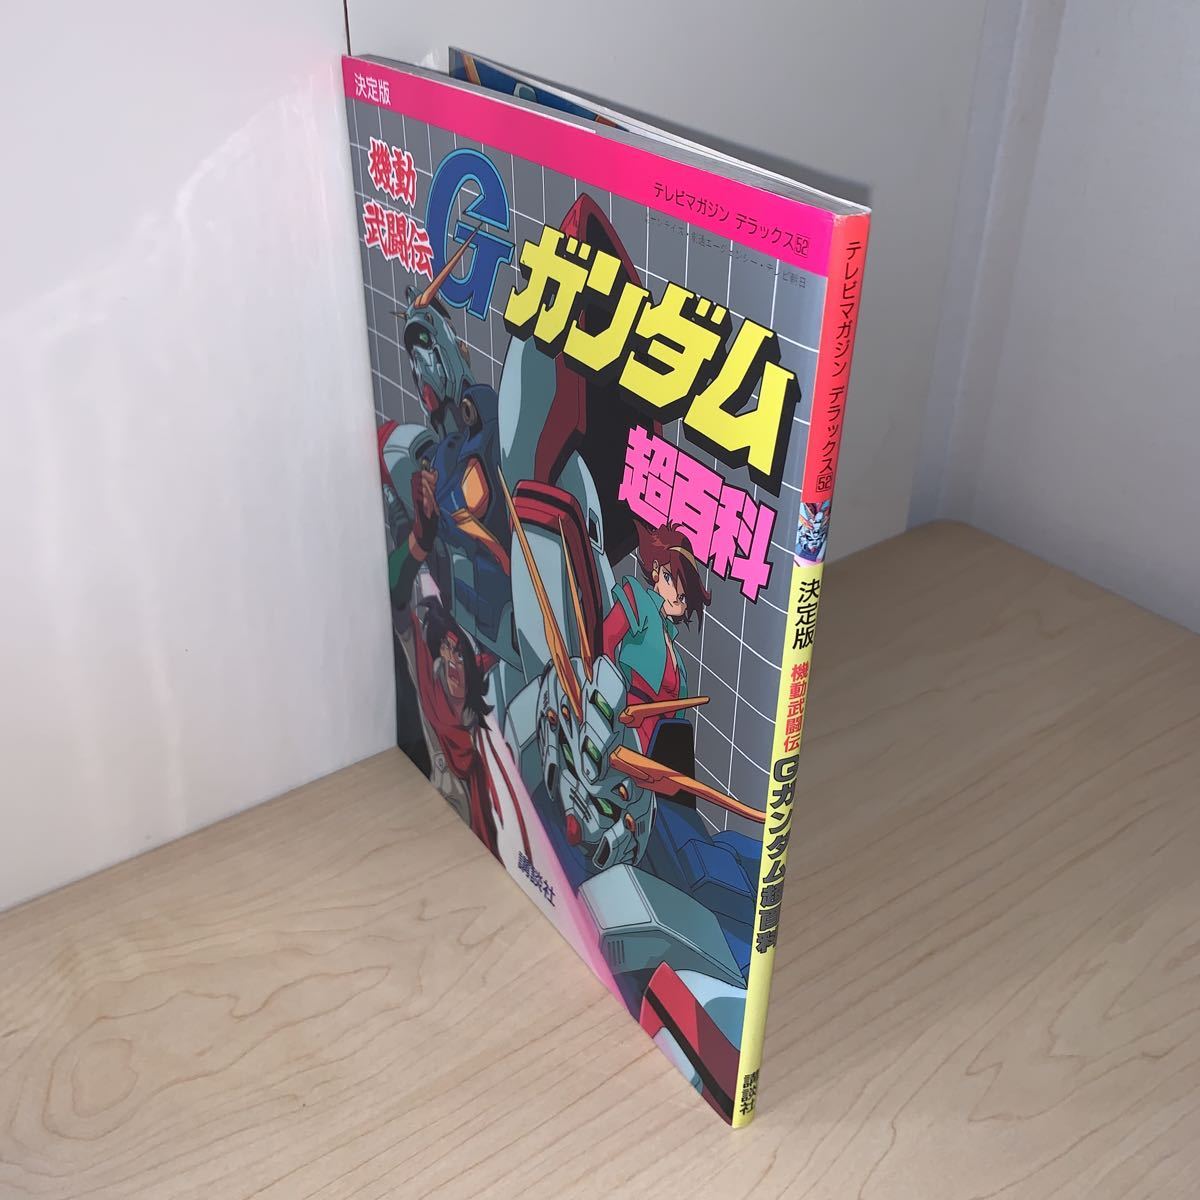 [ редкий первая версия 1994 год 12 месяц 12 день no. 1. выпуск ] телевизор журнал Deluxe 52 решение версия Mobile FIghter G Gundam супер различные предметы .. фирма 